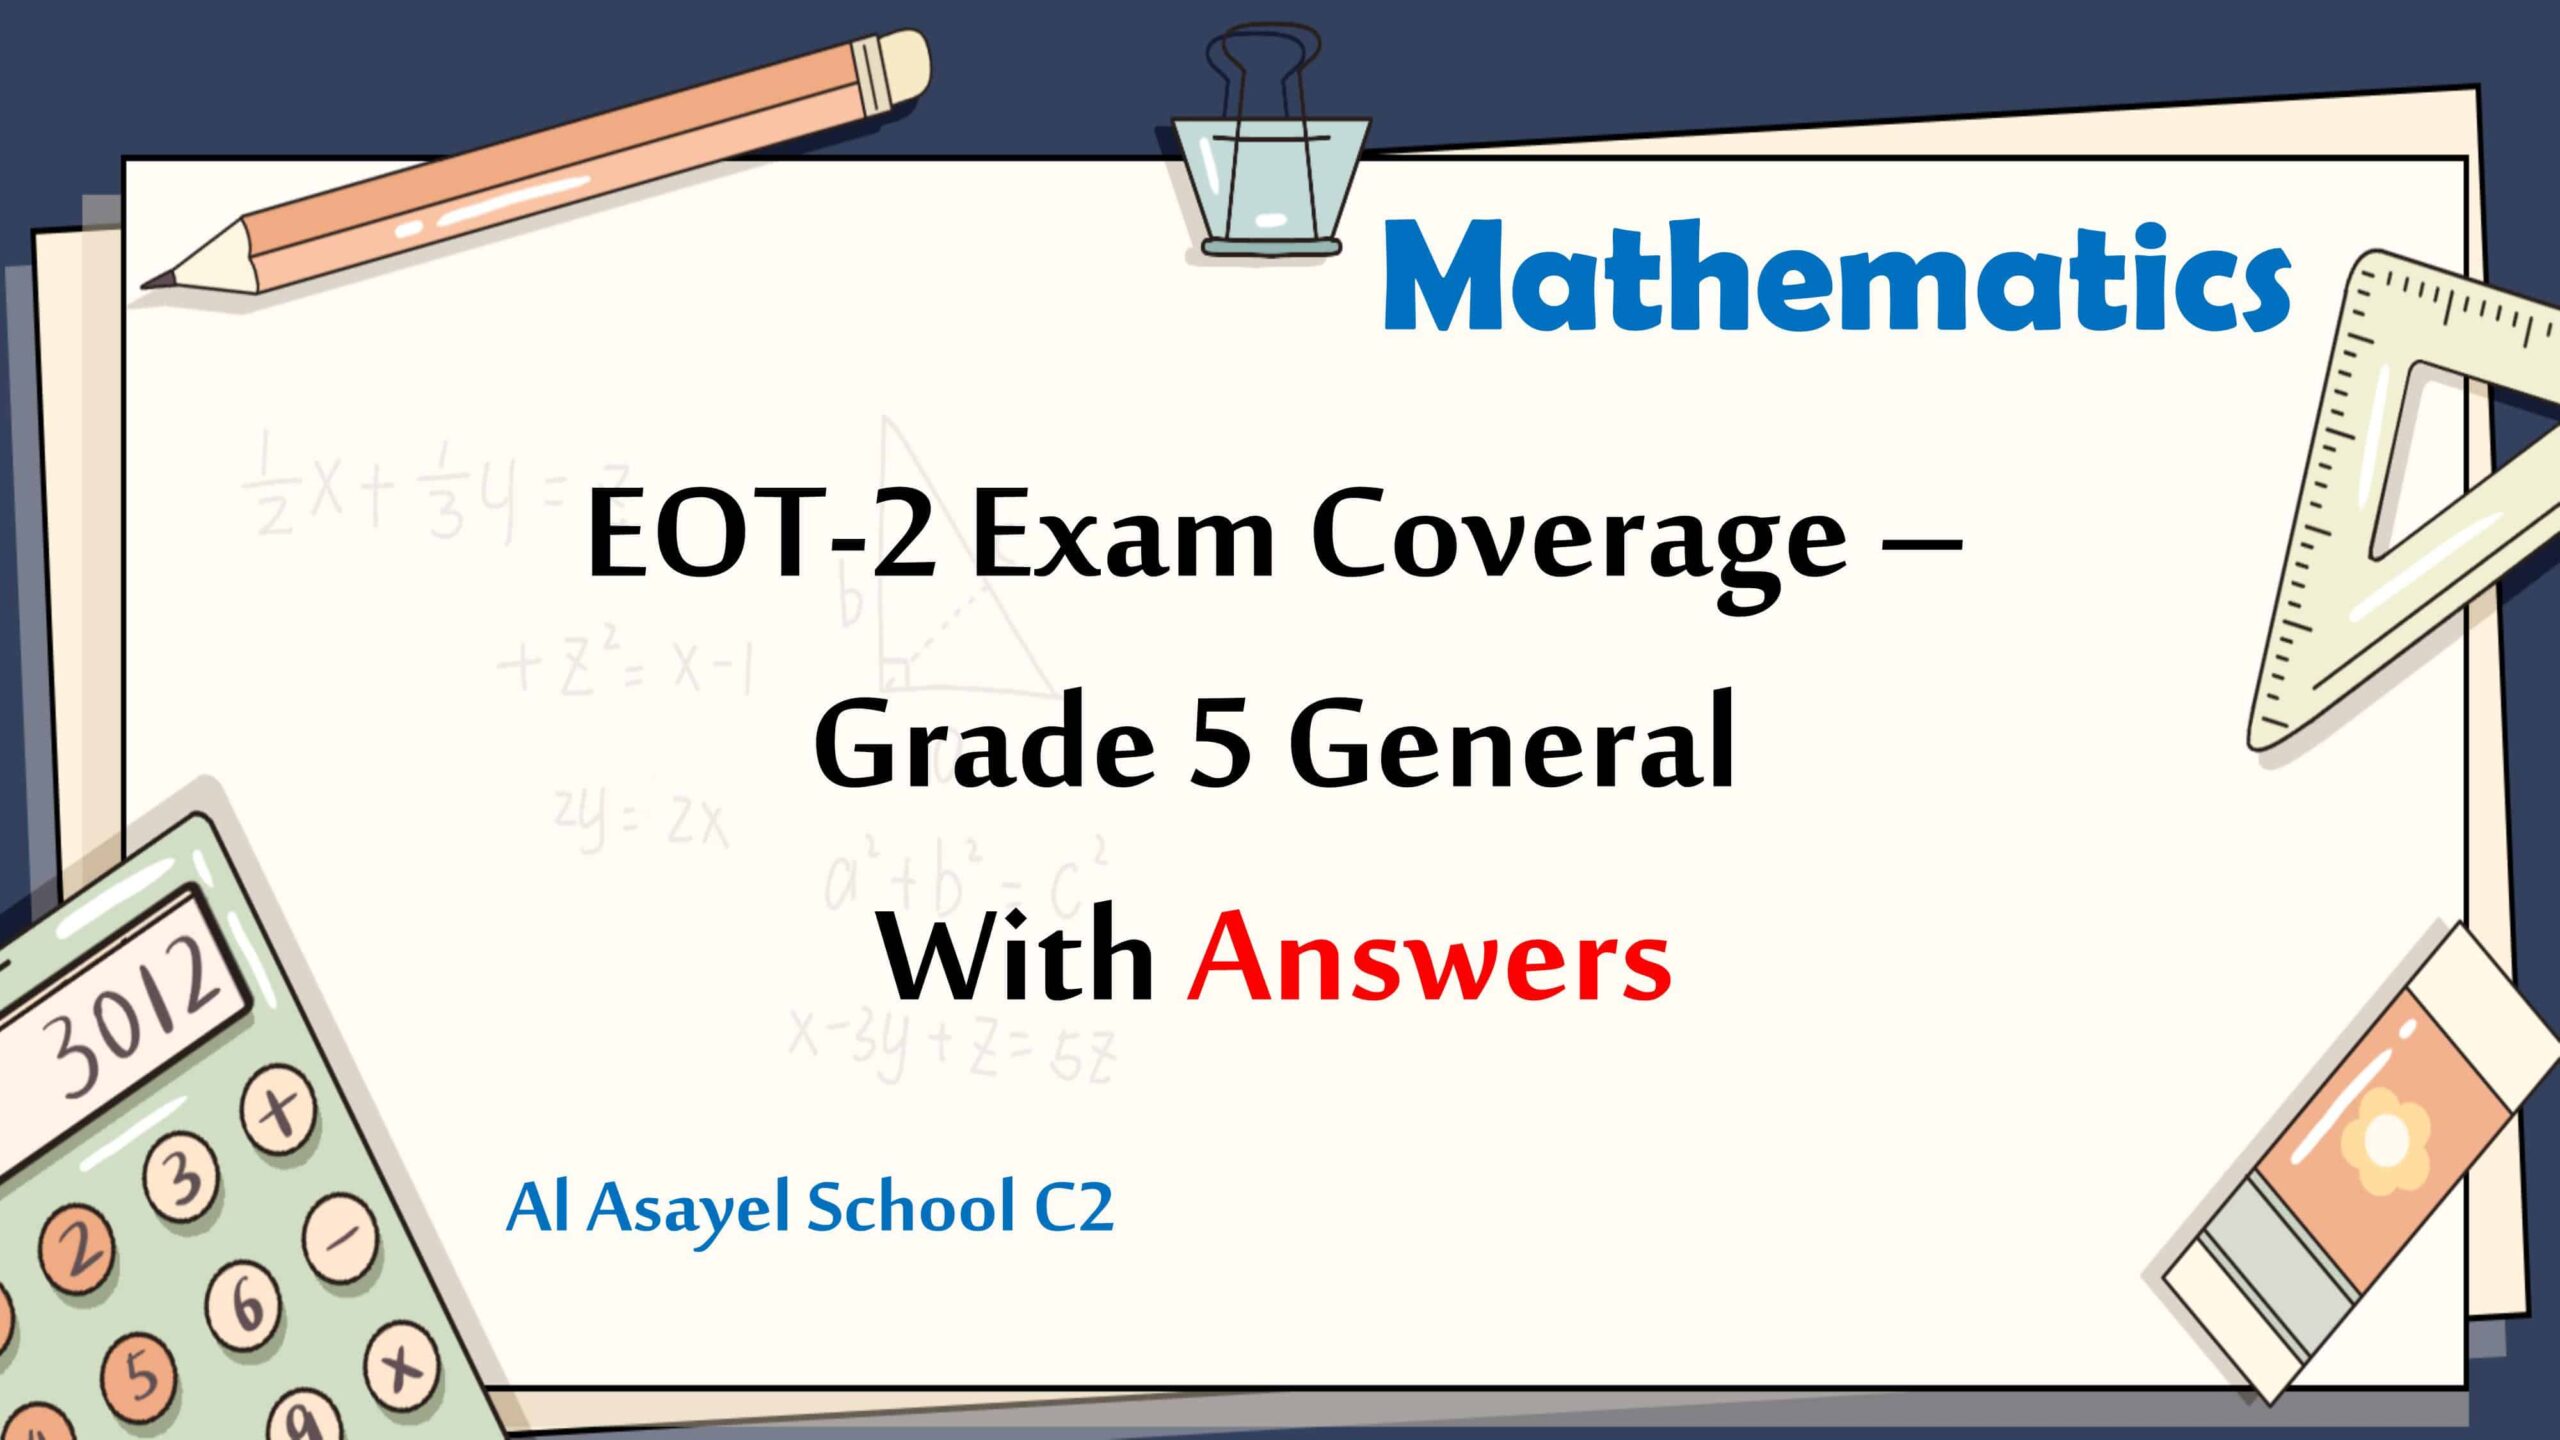 حل أسئلة هيكل الامتحان الرياضيات المتكاملة الصف الخامس